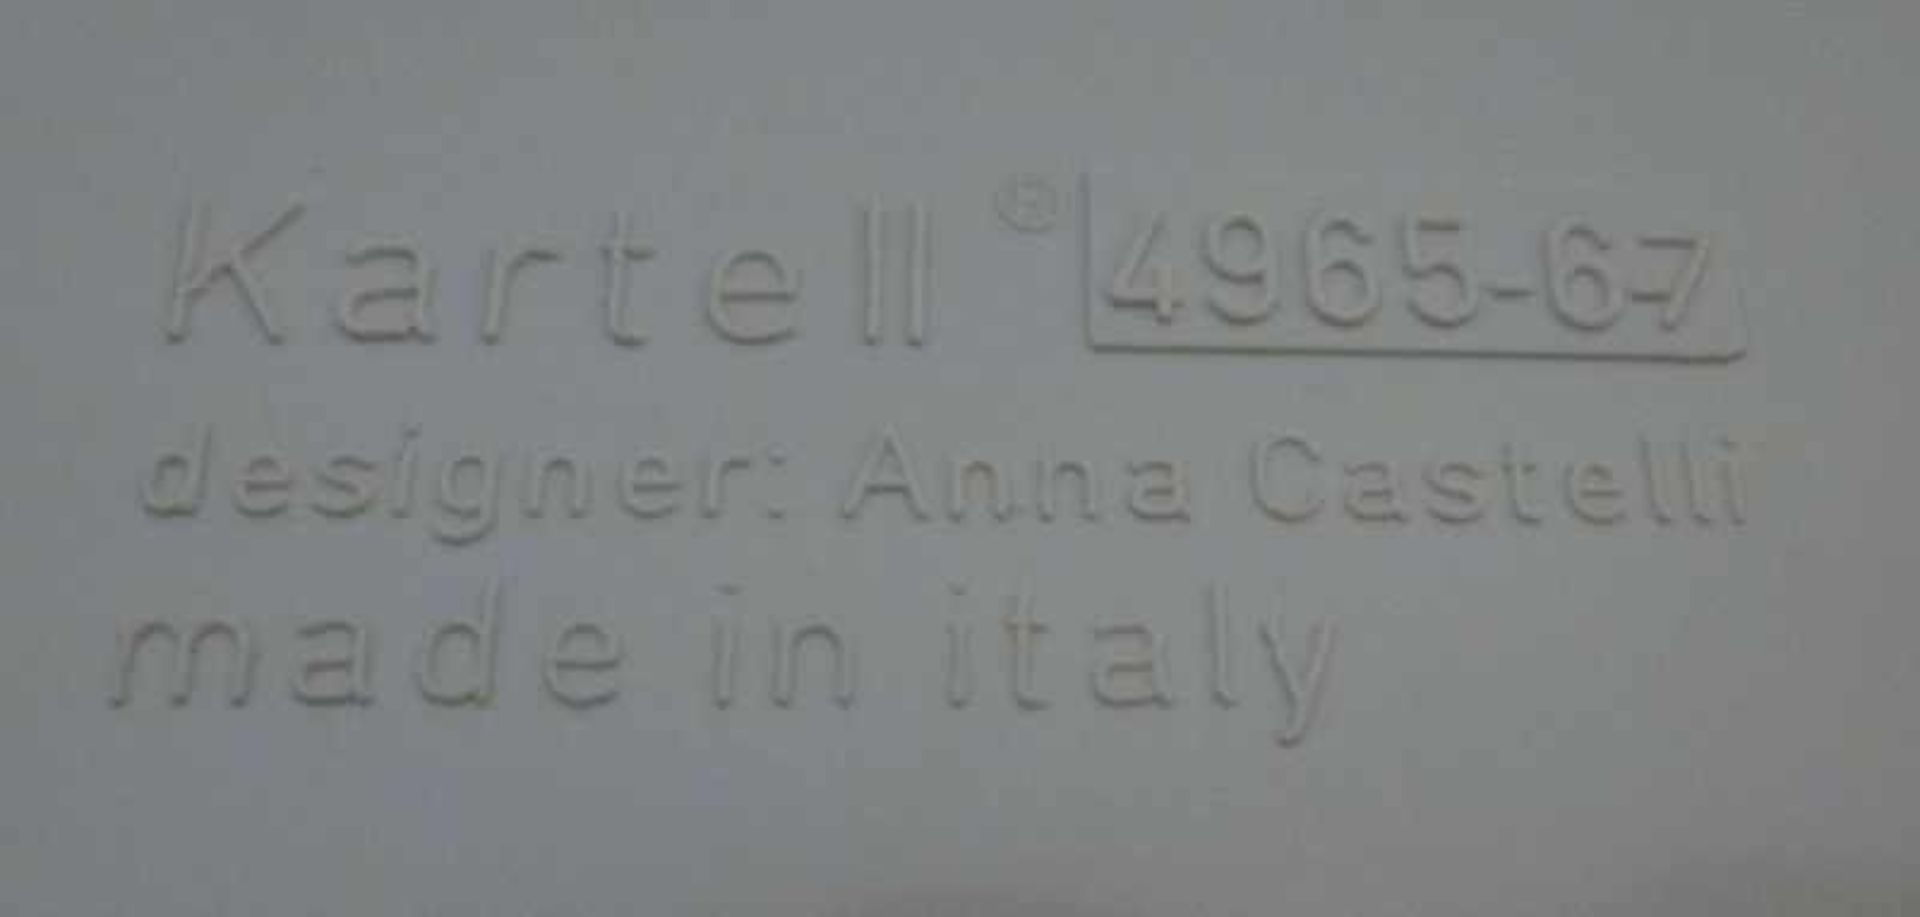 Paar Designmöbel "Componibili 4965", Anna C.Ferrieri, Kartell weißer Kunststoff(vergilbt), - Bild 2 aus 2